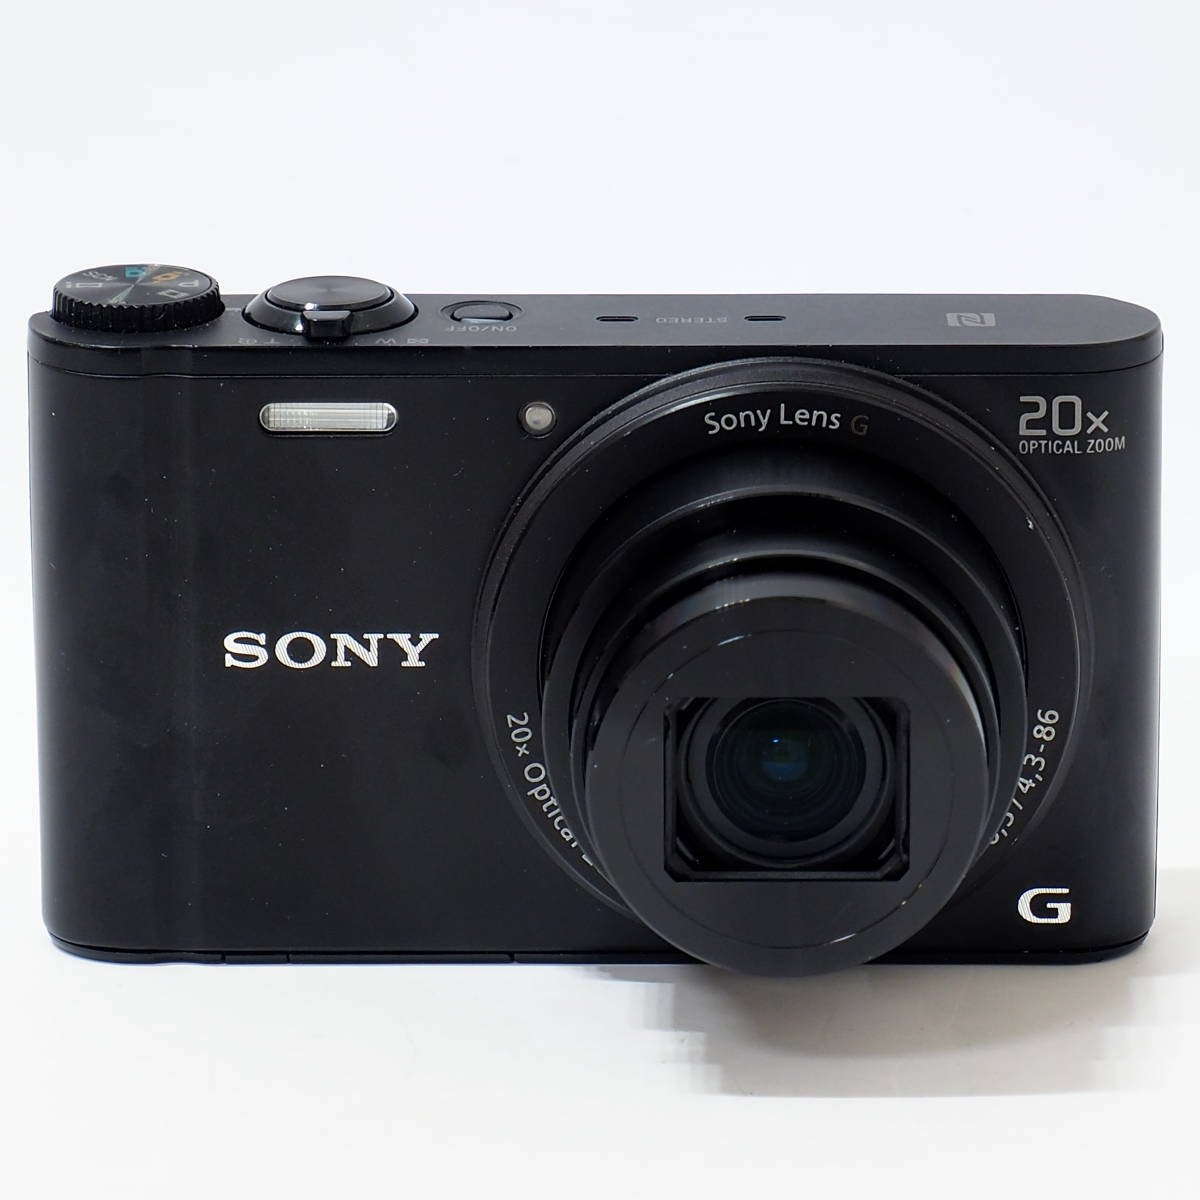 【ズあり】 SONY Cyber-Shot DSC-WX-350 Black Sony Lens G 4.3-86mm F3.5-6.5 20x Optical Zoom 1820万画素スマホとつながるプレミアムハイズーム良好 オートフォ